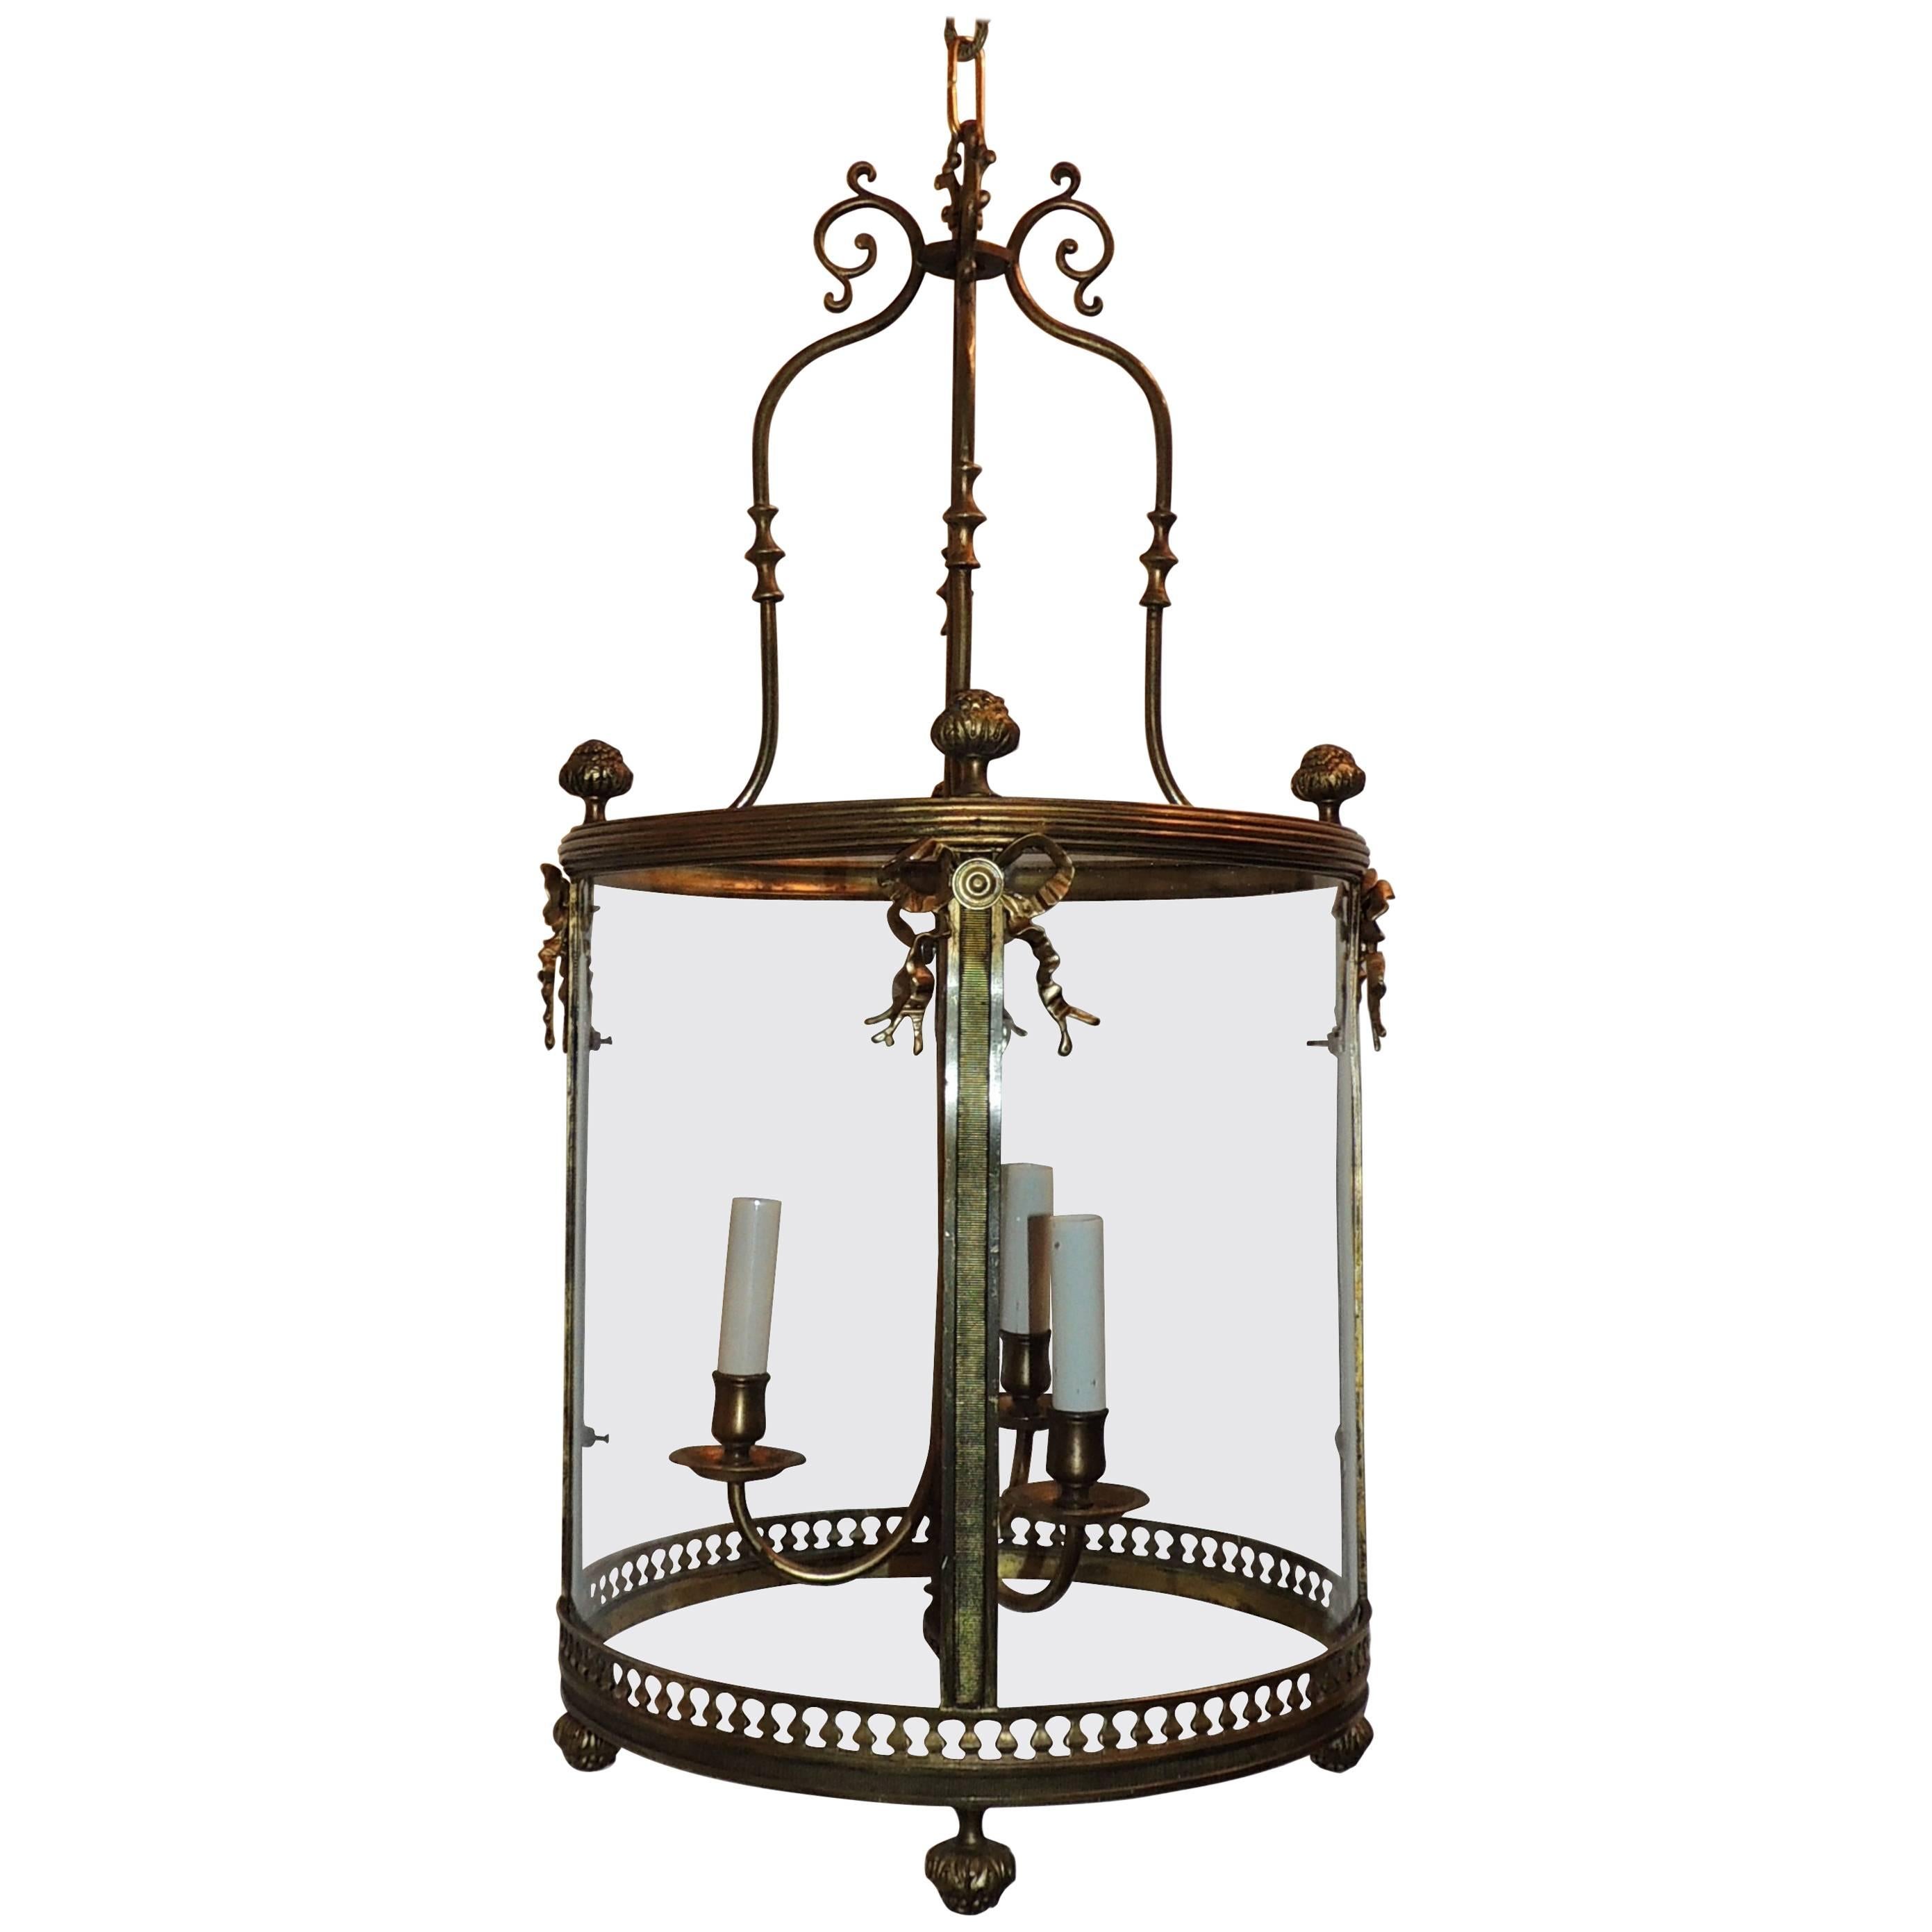 Merveilleuse lanterne néoclassique française avec grand nœud en bronze de style Régence